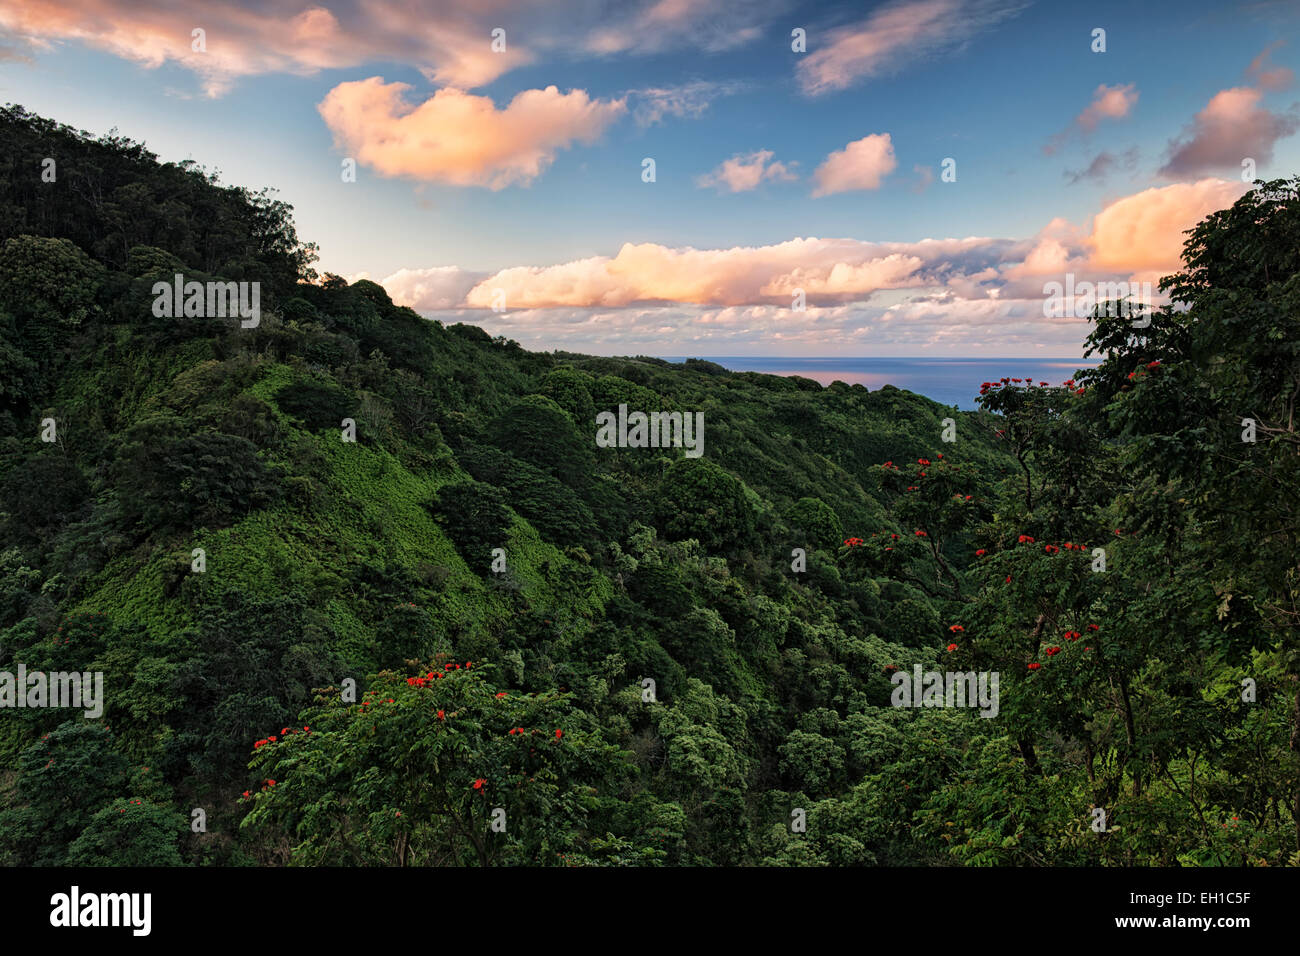 Die Straße nach Hana bietet spektakuläre Ausblicke auf die üppige Vegetation und dem Pazifischen Ozean auf Hawaii Insel Maui. Stockfoto